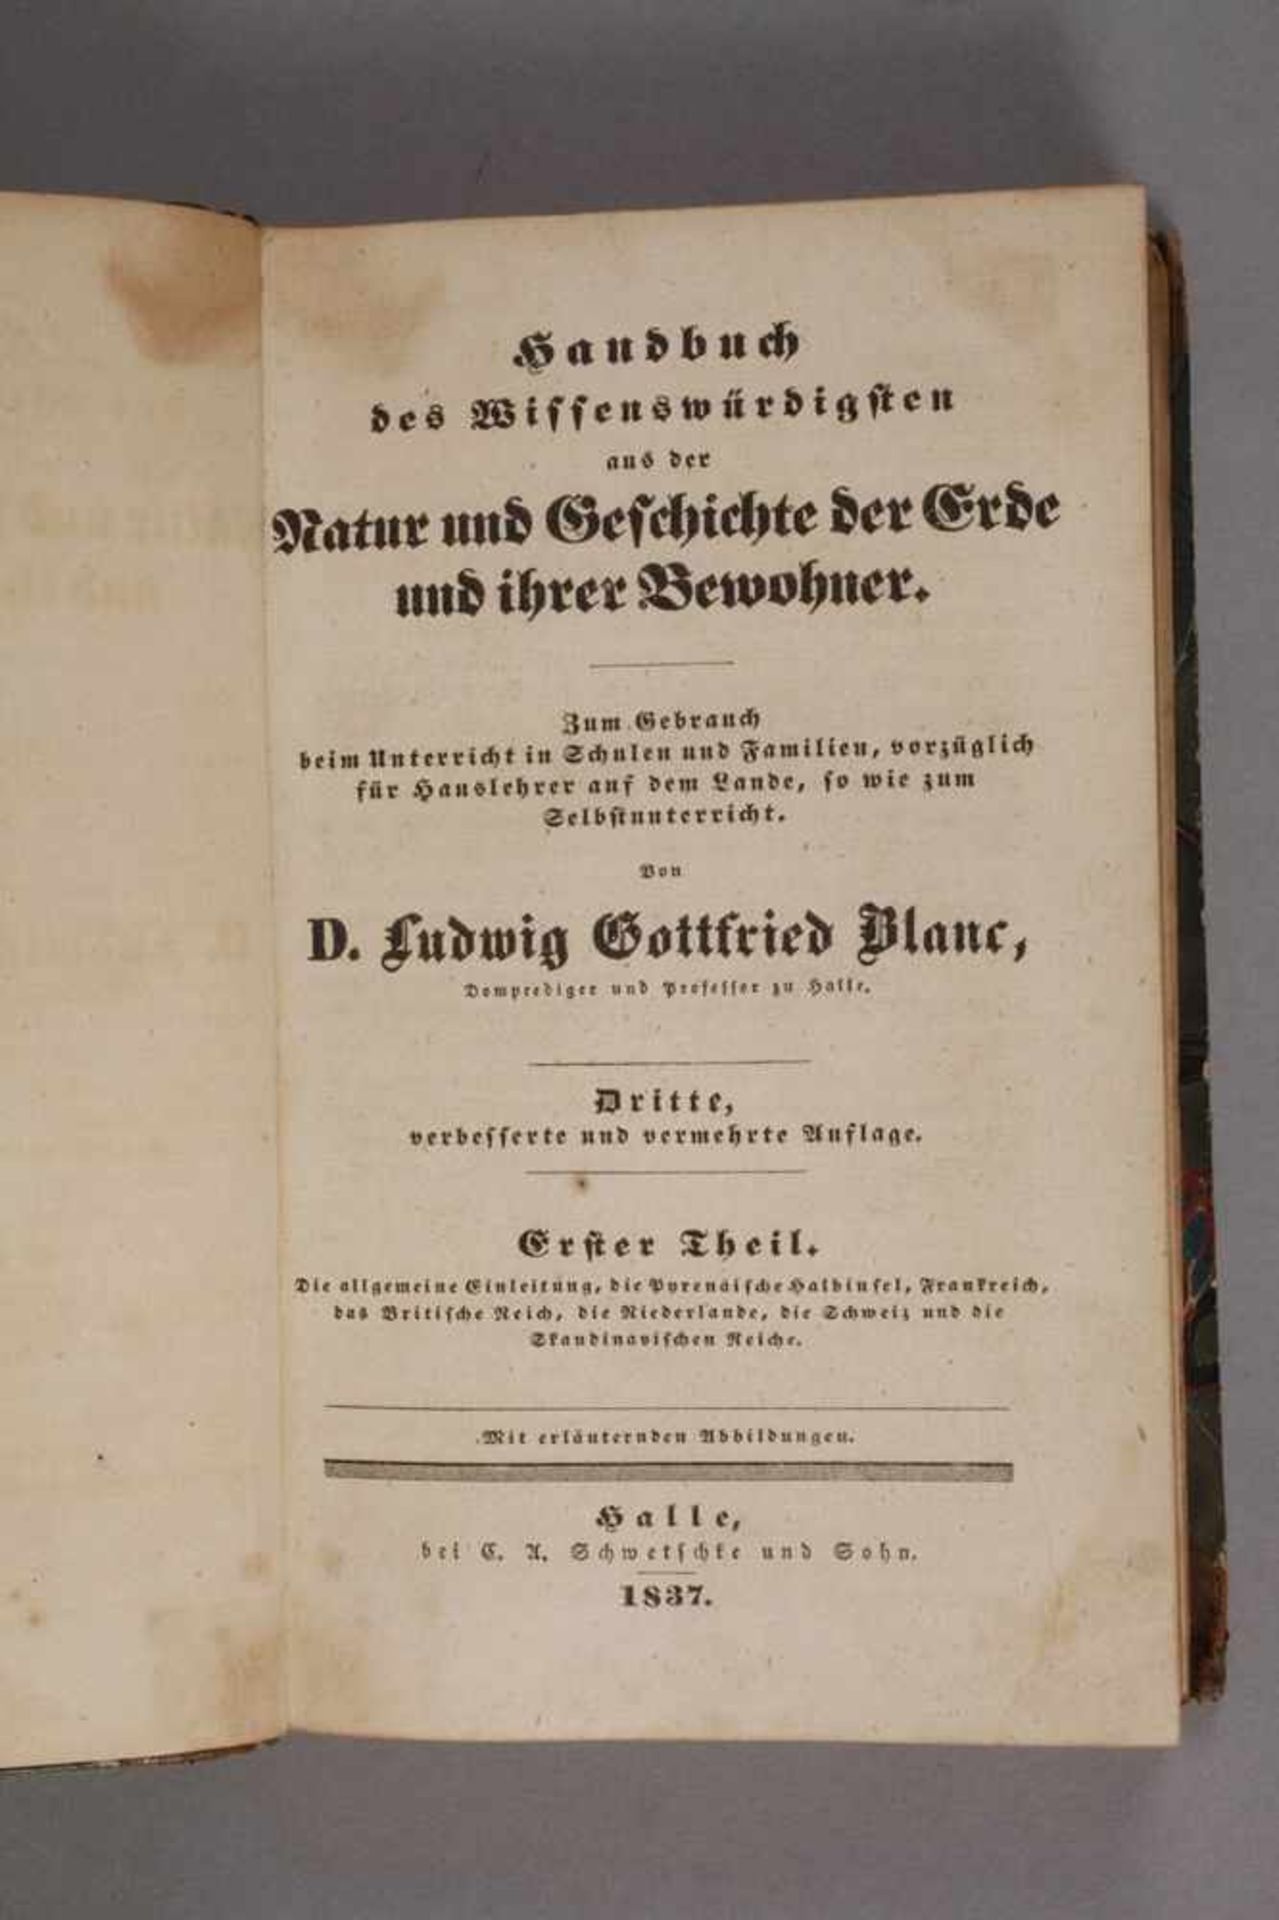 Handbuch des Wissenswürdigsten< - Image 2 of 3